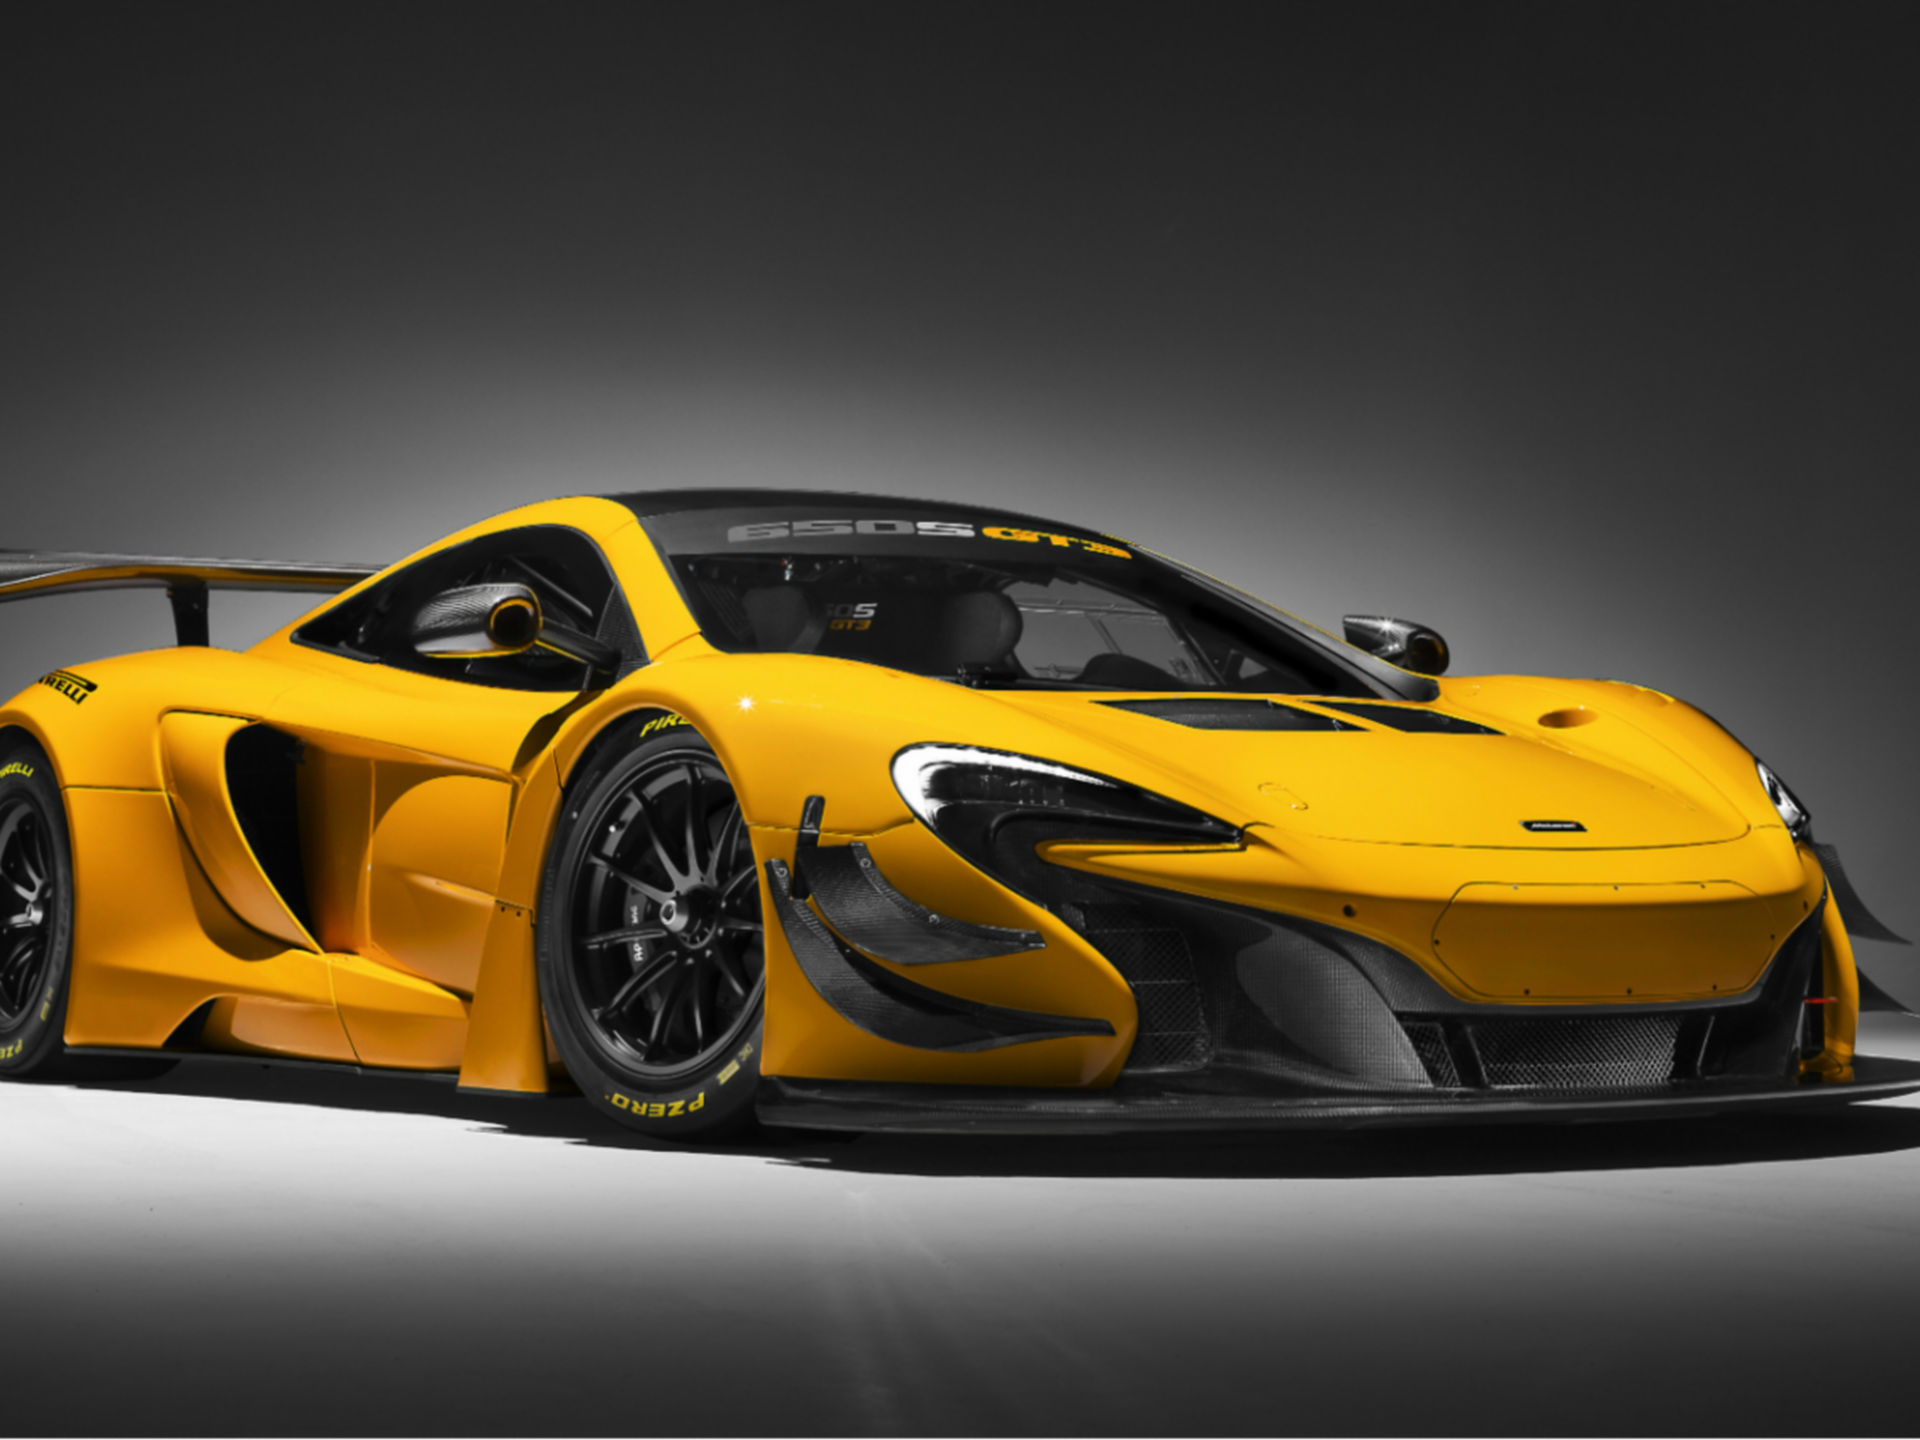 McLaren Customer Racing - Models